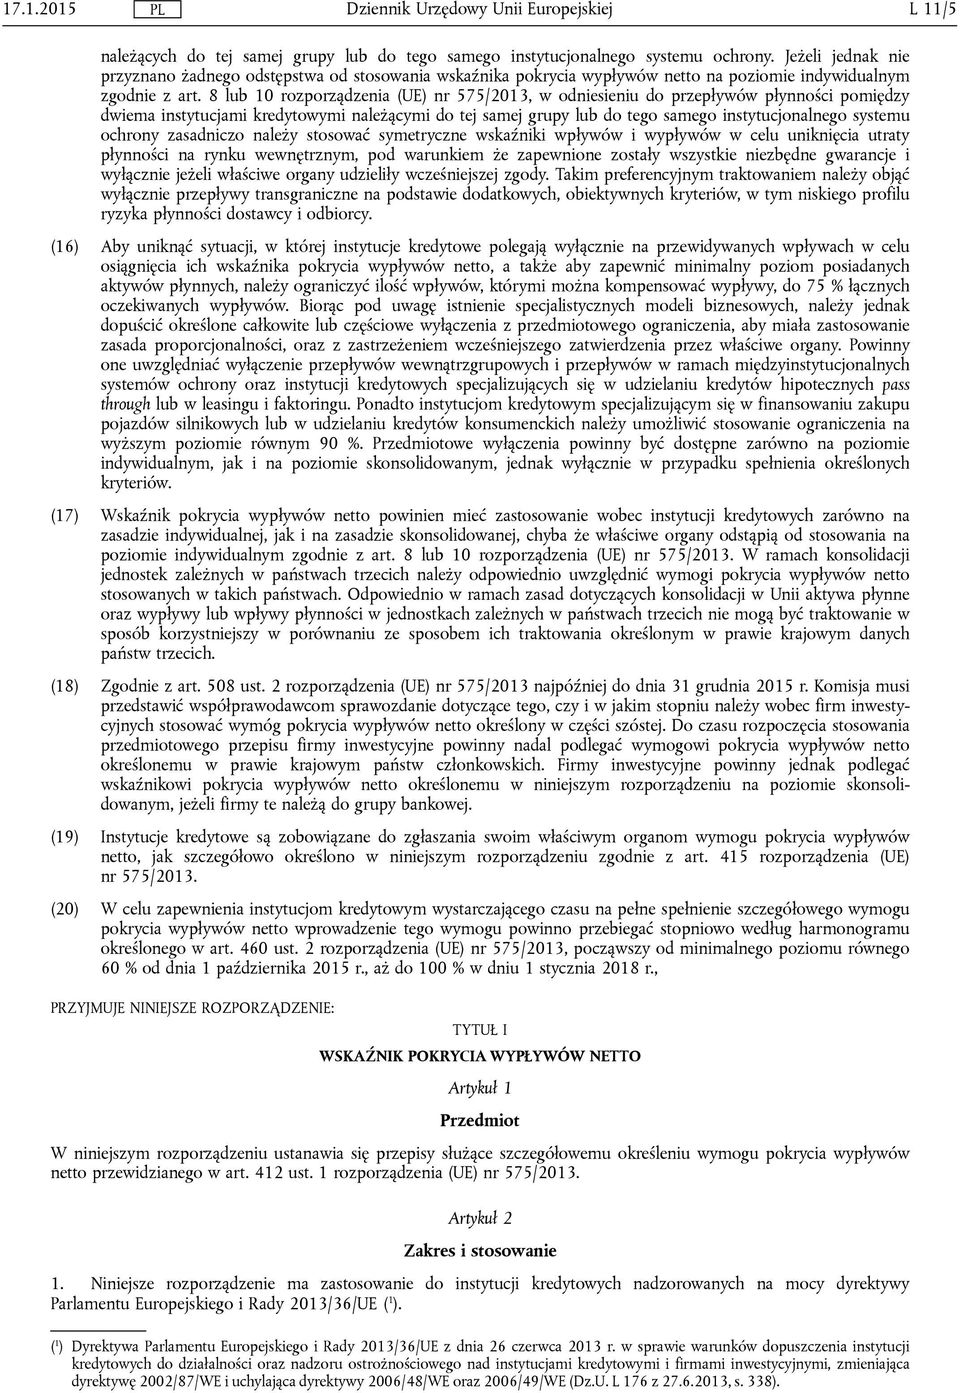 8 lub 10 rozporządzenia (UE) nr 575/2013, w odniesieniu do przepływów płynności pomiędzy dwiema instytucjami kredytowymi należącymi do tej samej grupy lub do tego samego instytucjonalnego systemu